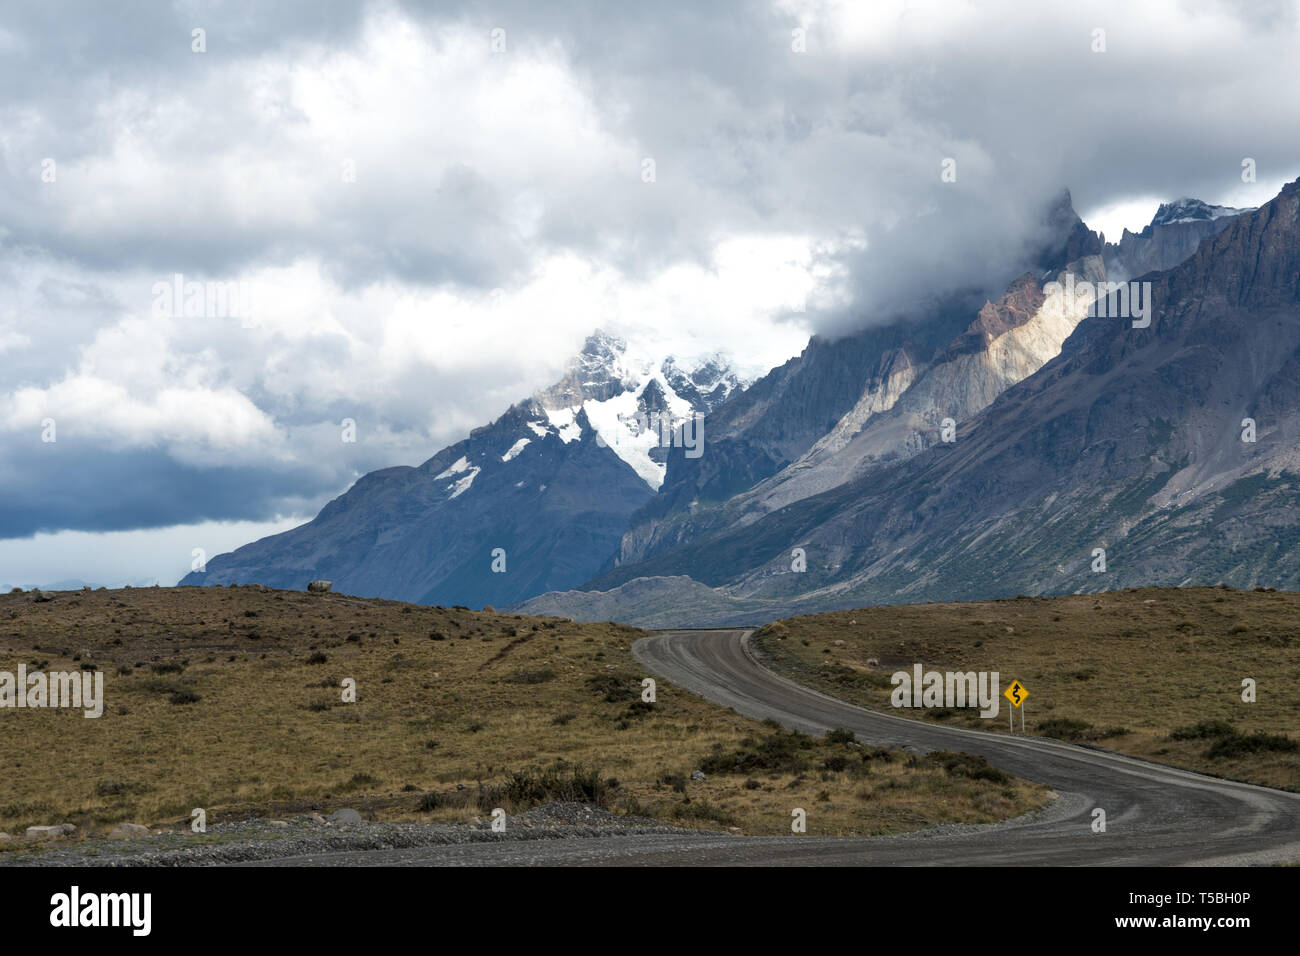 Le paysage spectaculaire du Parc National Torres del Paine, dans le sud de la Patagonie, au Chili Banque D'Images